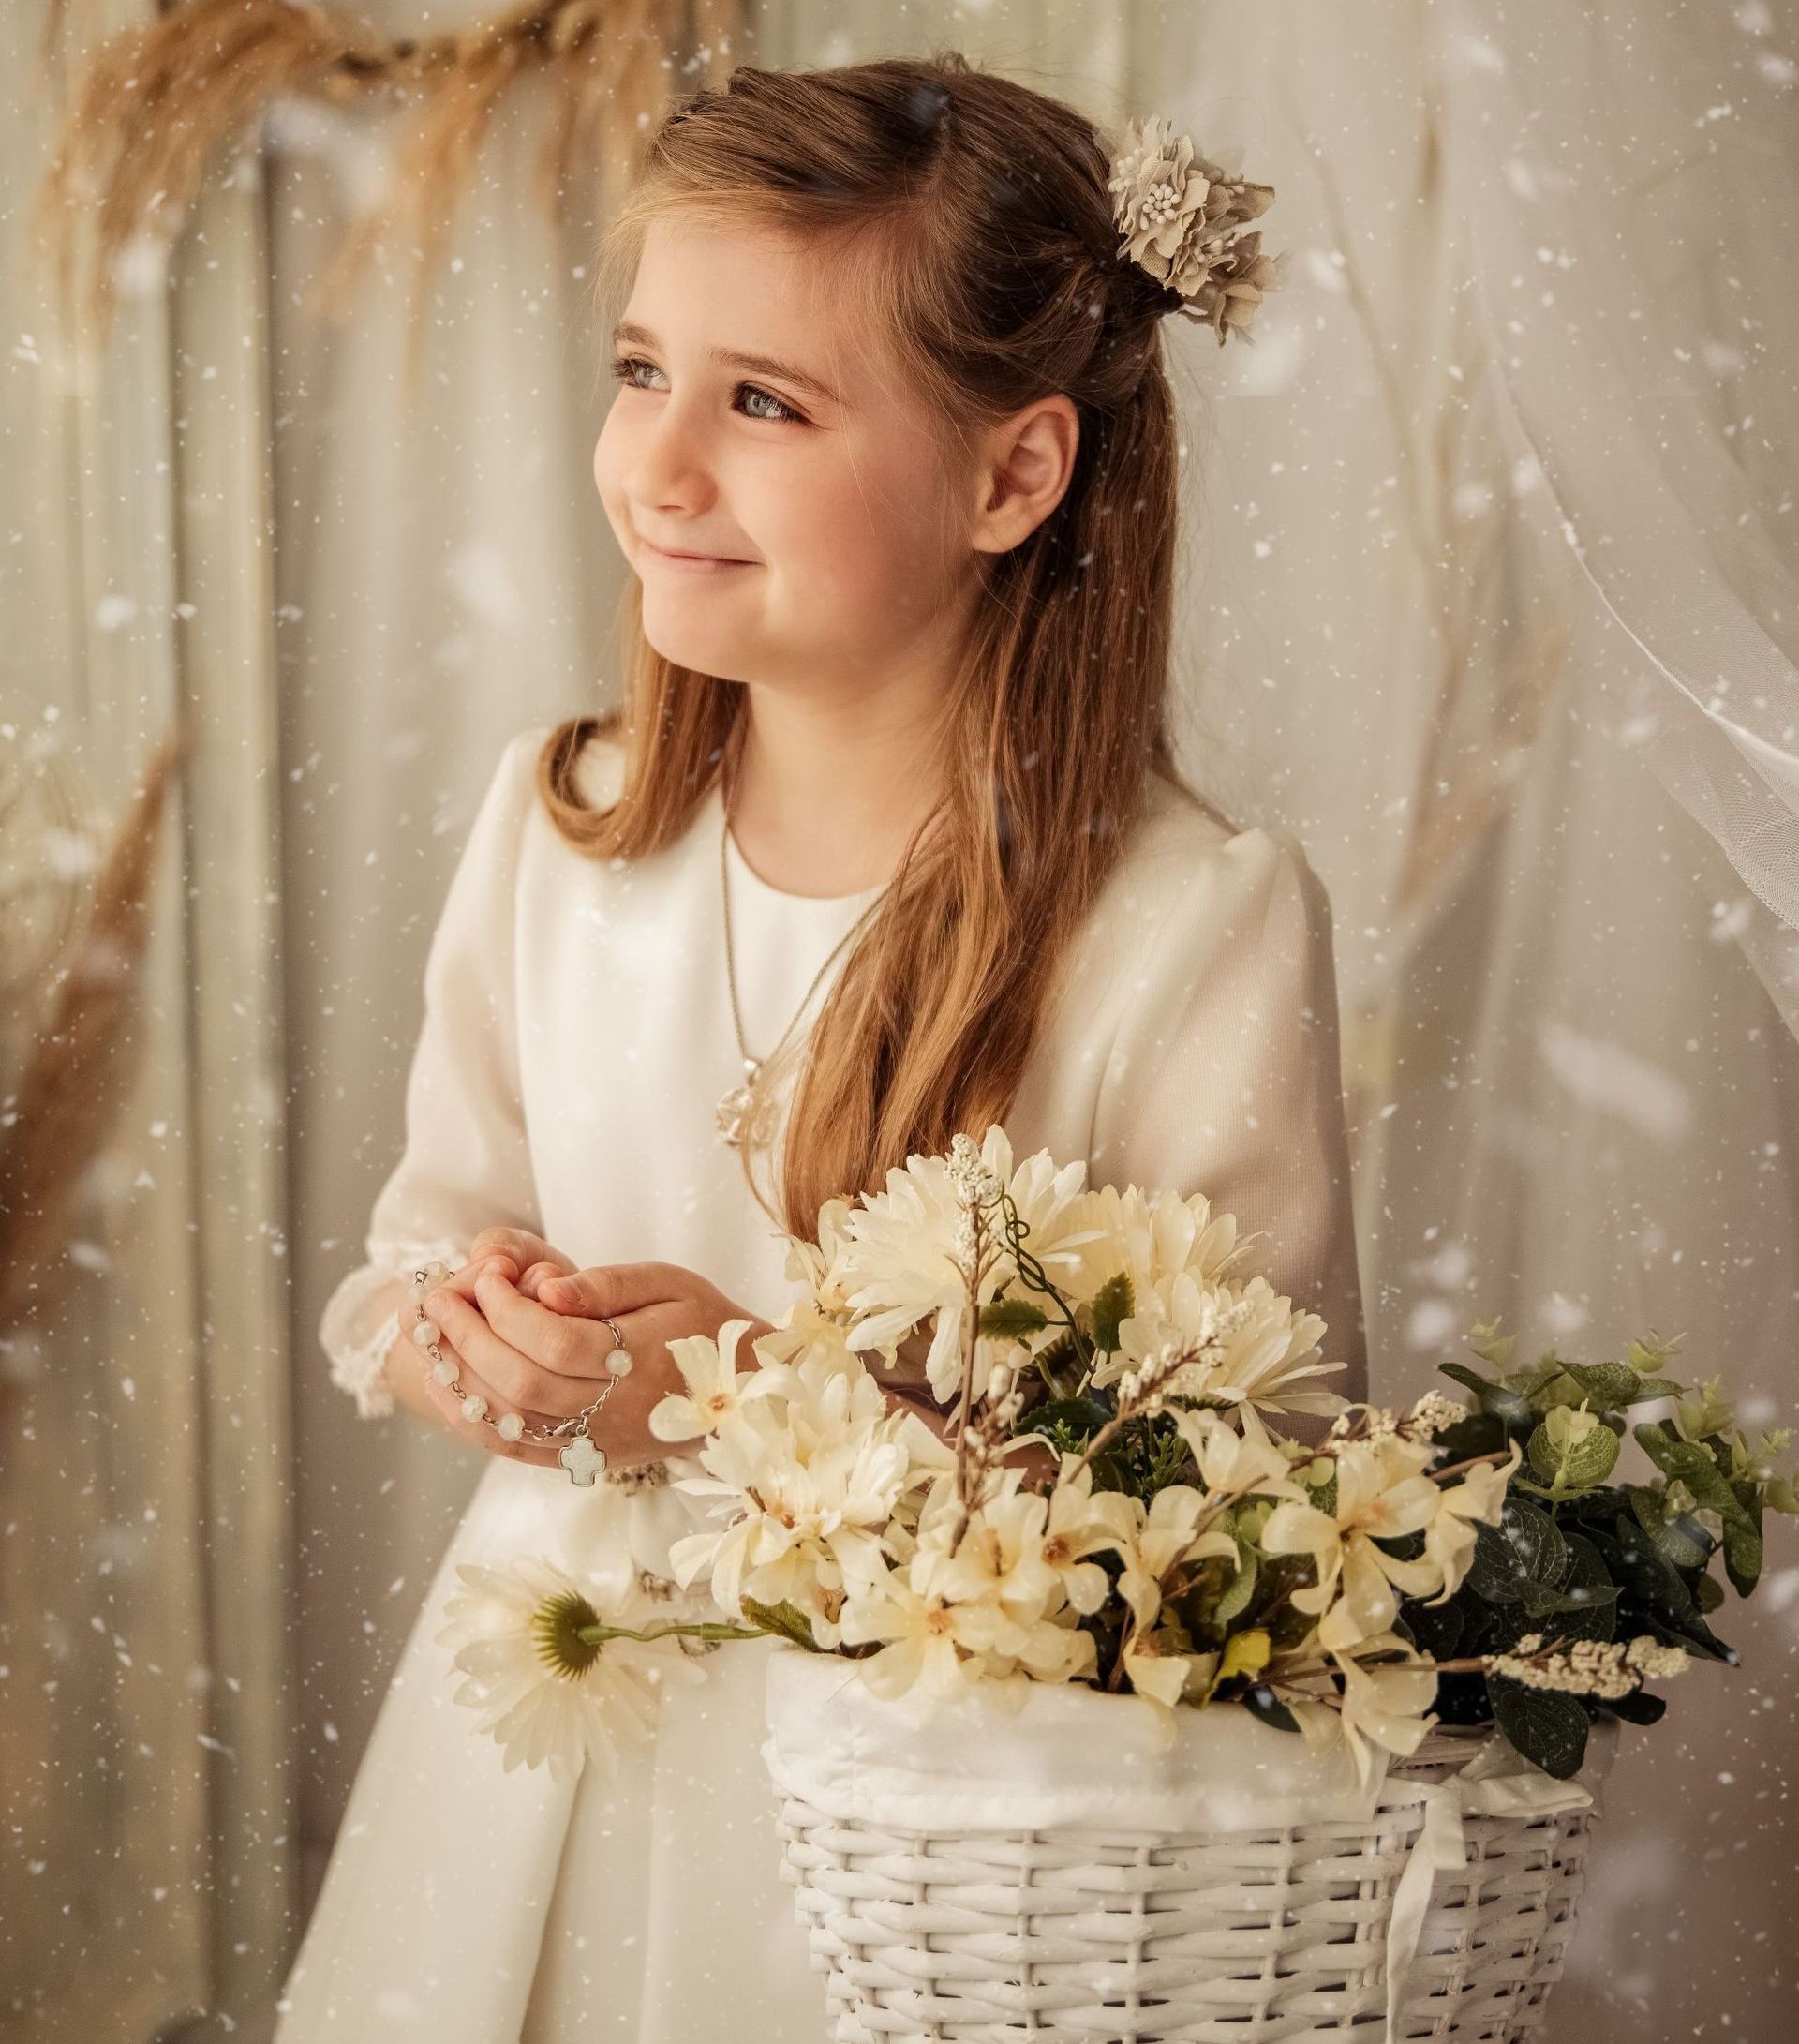 una niña con un vestido blanco sostiene una canasta de flores.